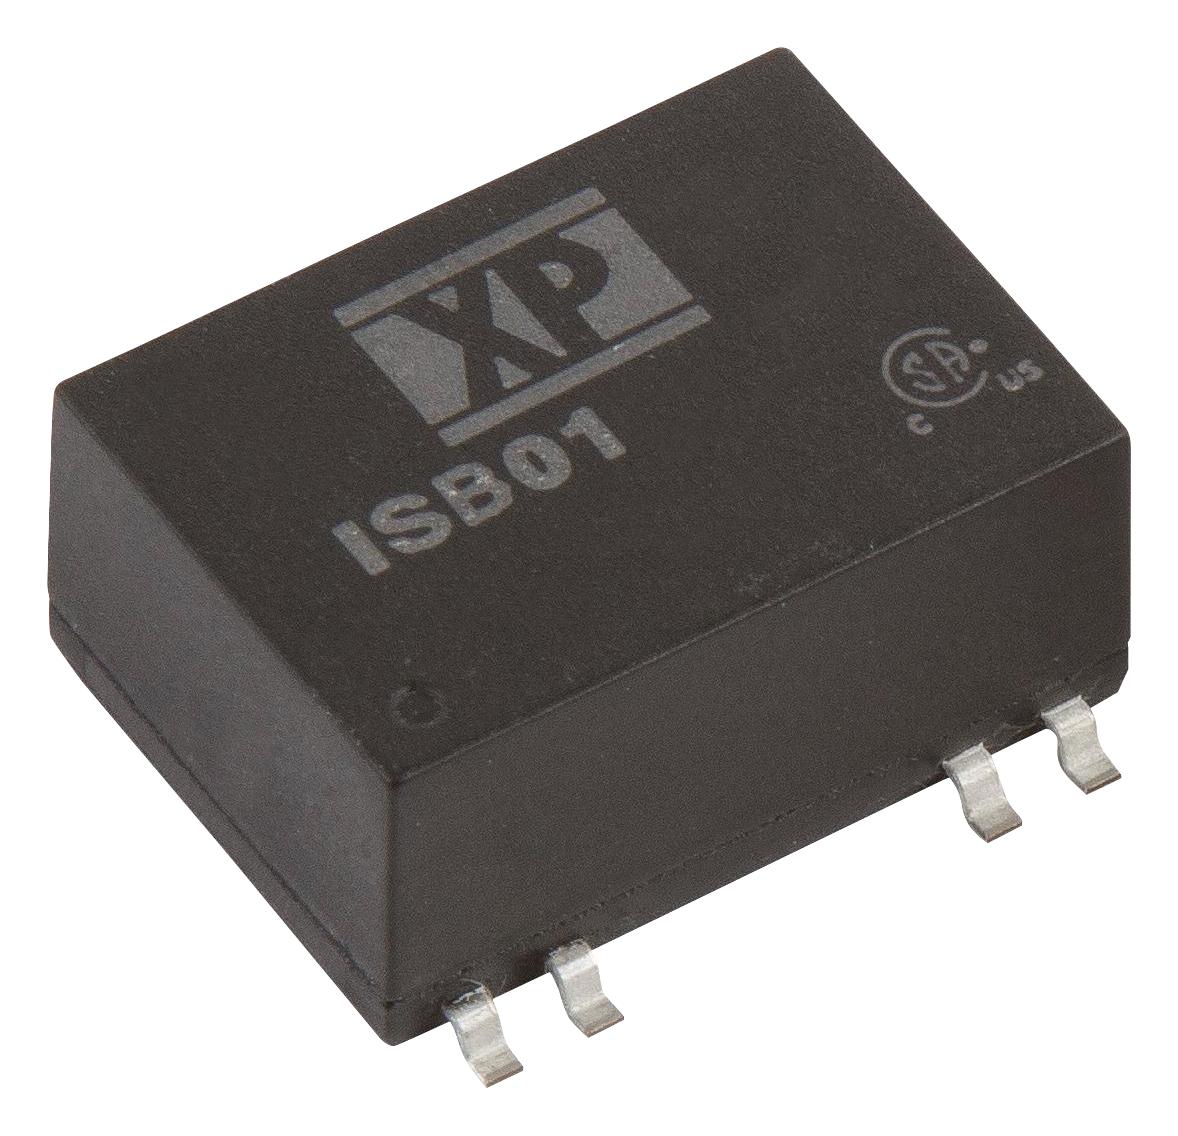 ISB0148S12 DC-DC CONVERTER, 12V, 0.083A XP POWER